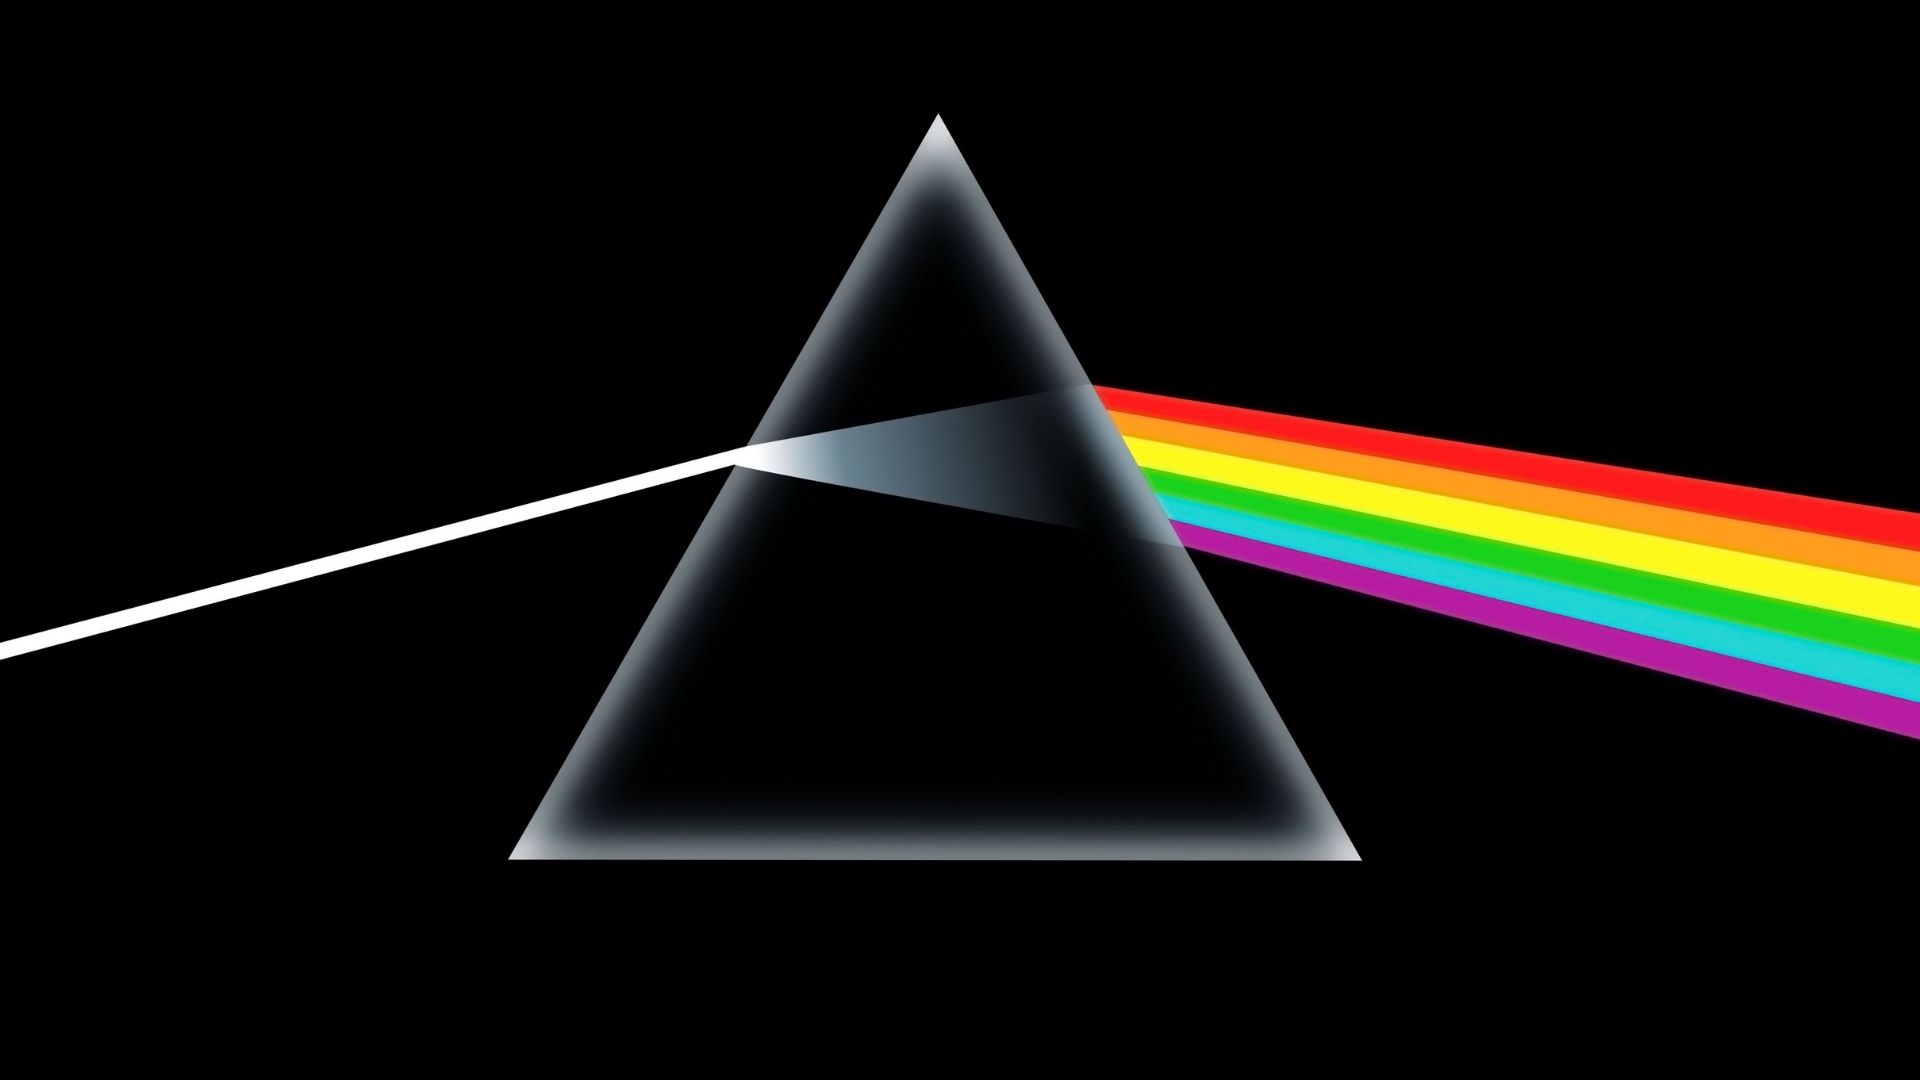 Pink Floyd publica su discografía completa en YouTube